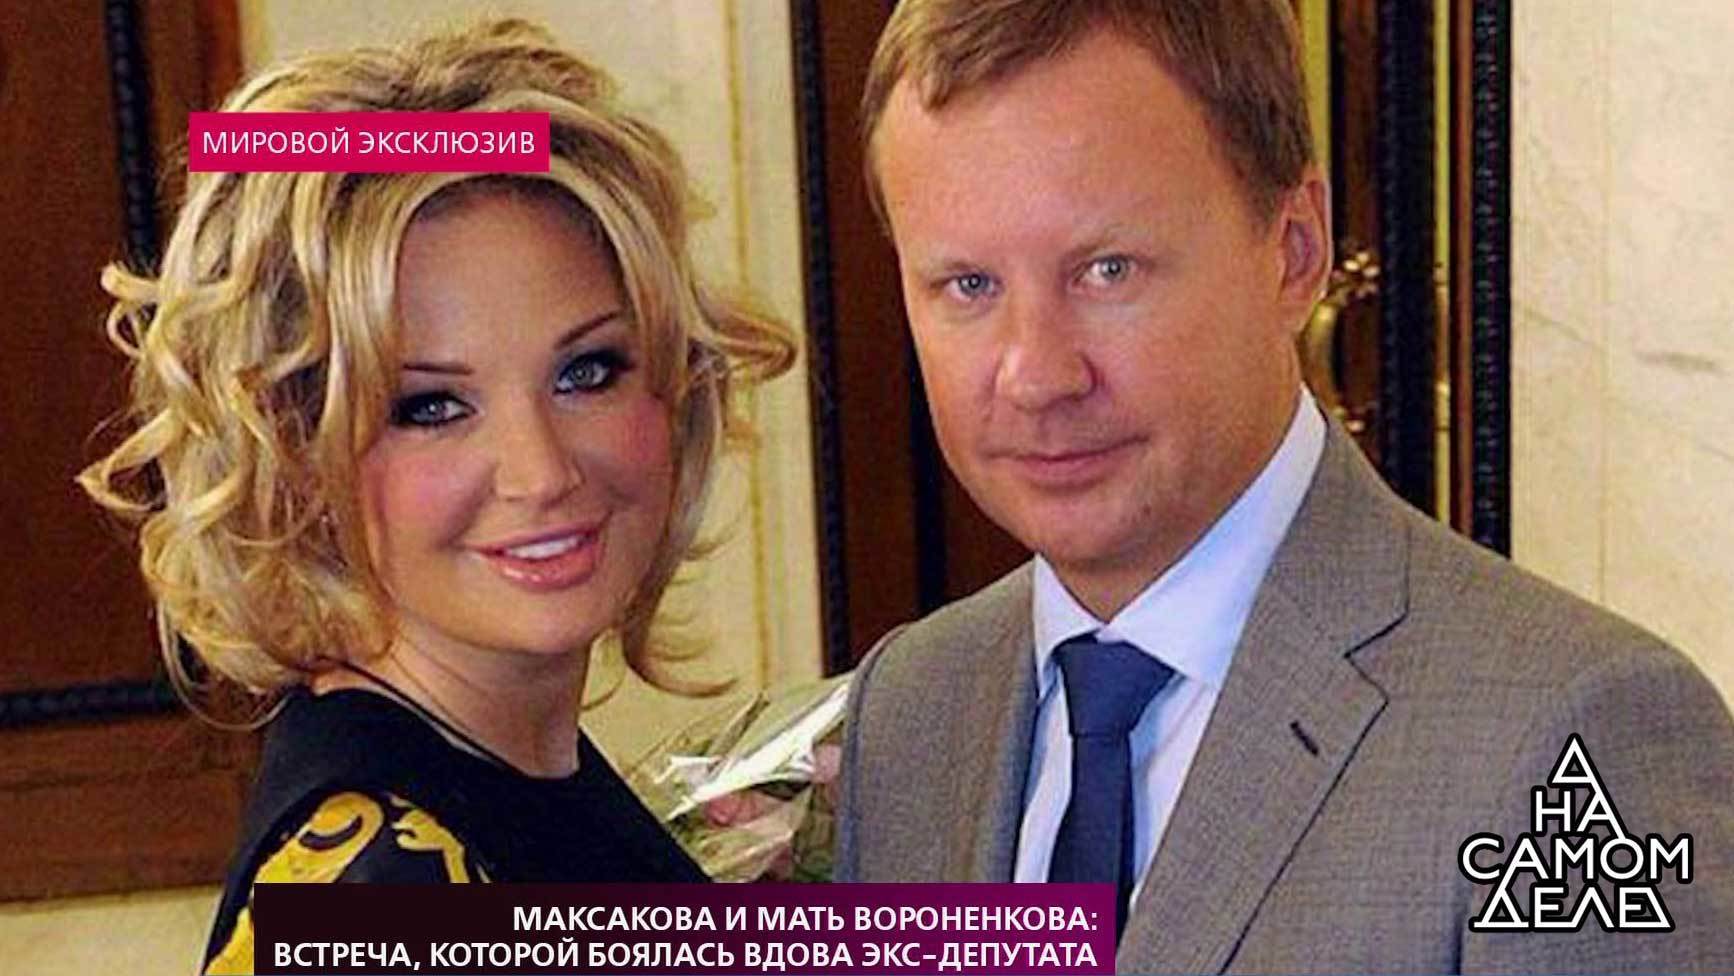 «На самом деле». Максакова и мать Вороненкова: встреча, которой боялась вдова экс-депутата